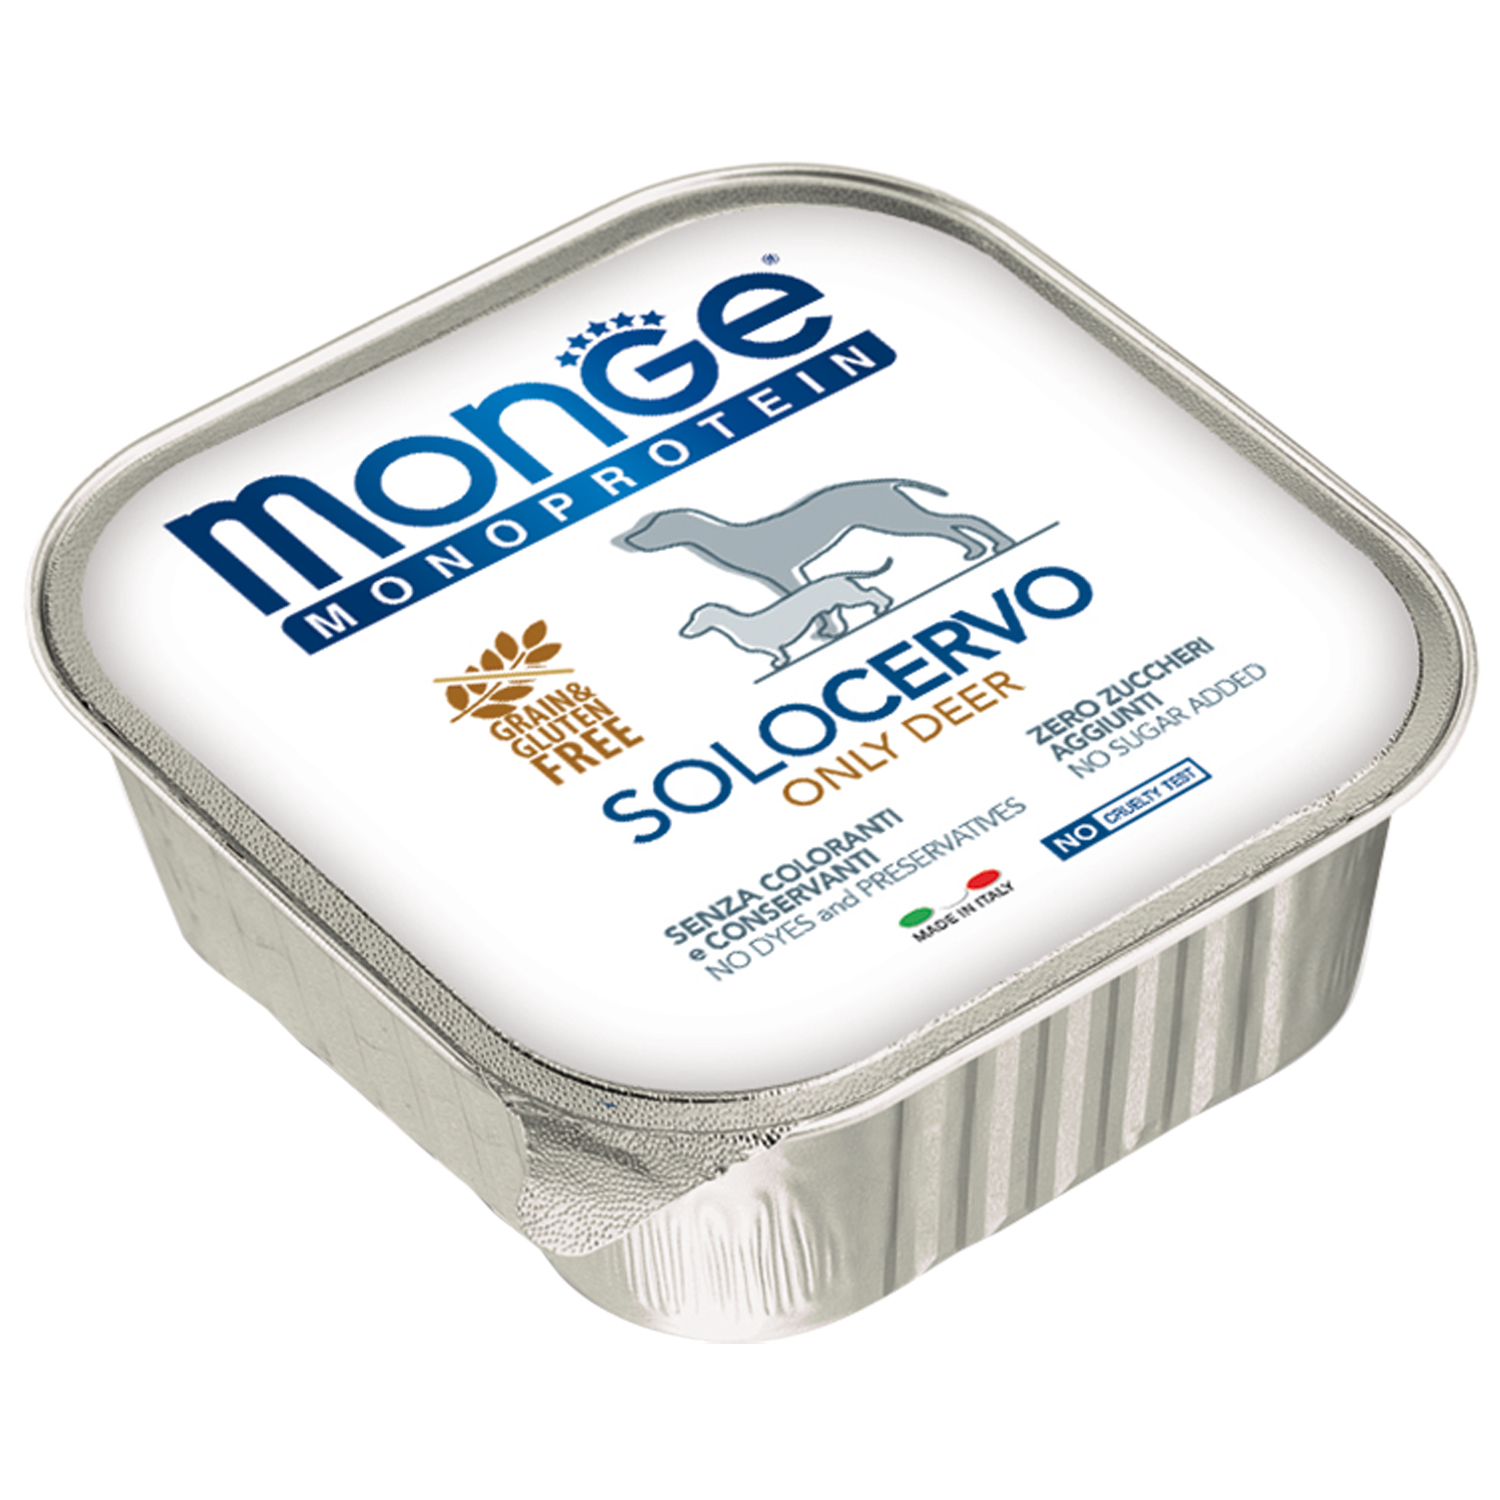 Влажный корм Monge Dog Monoprotein для собак, паштет из оленины, консервы 150 г